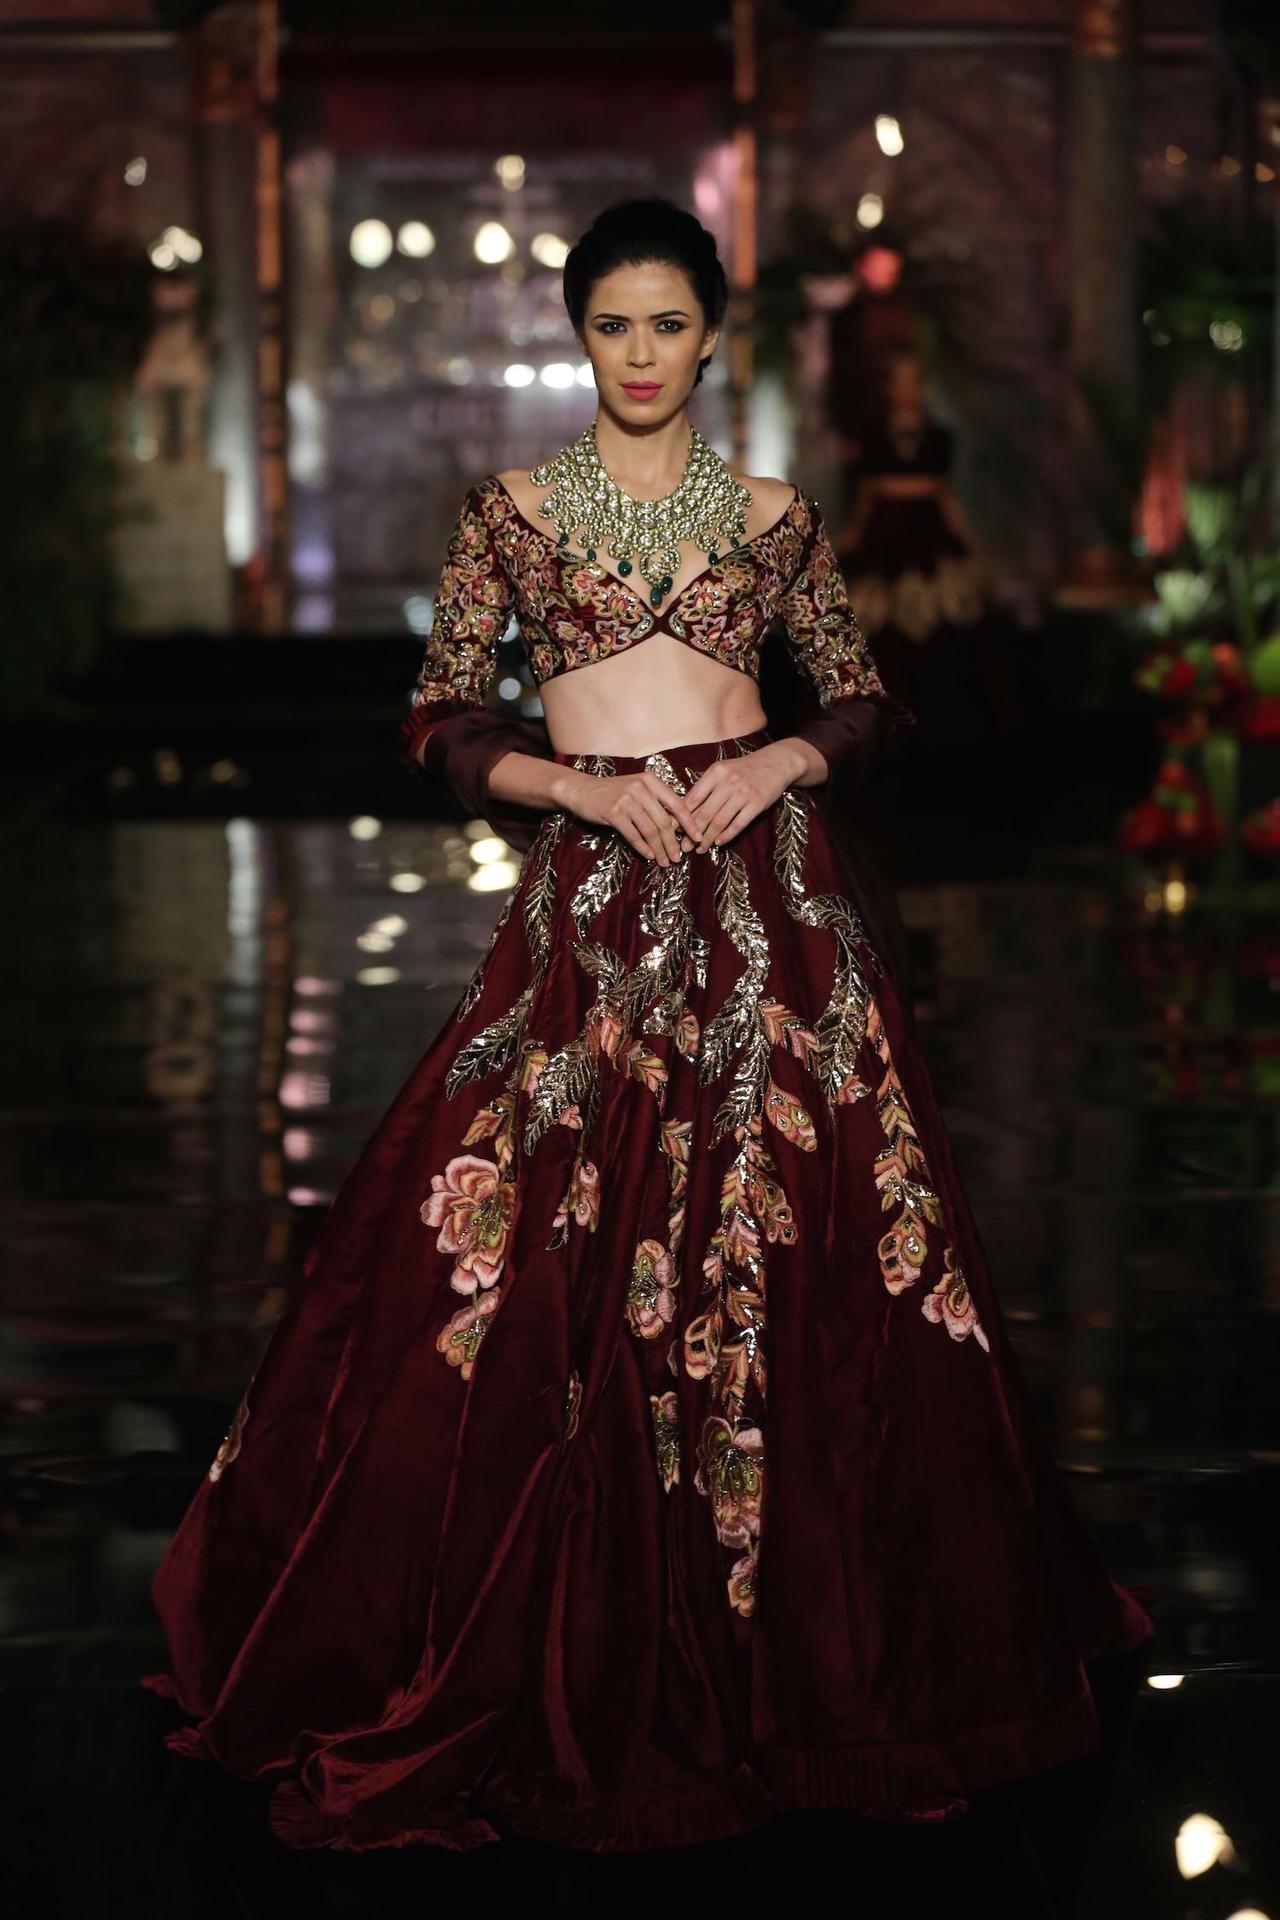 Peacock Design Velvet Bridal Lehenga Chunri Maroon Indian Wedding  Lthanksgiving | eBay